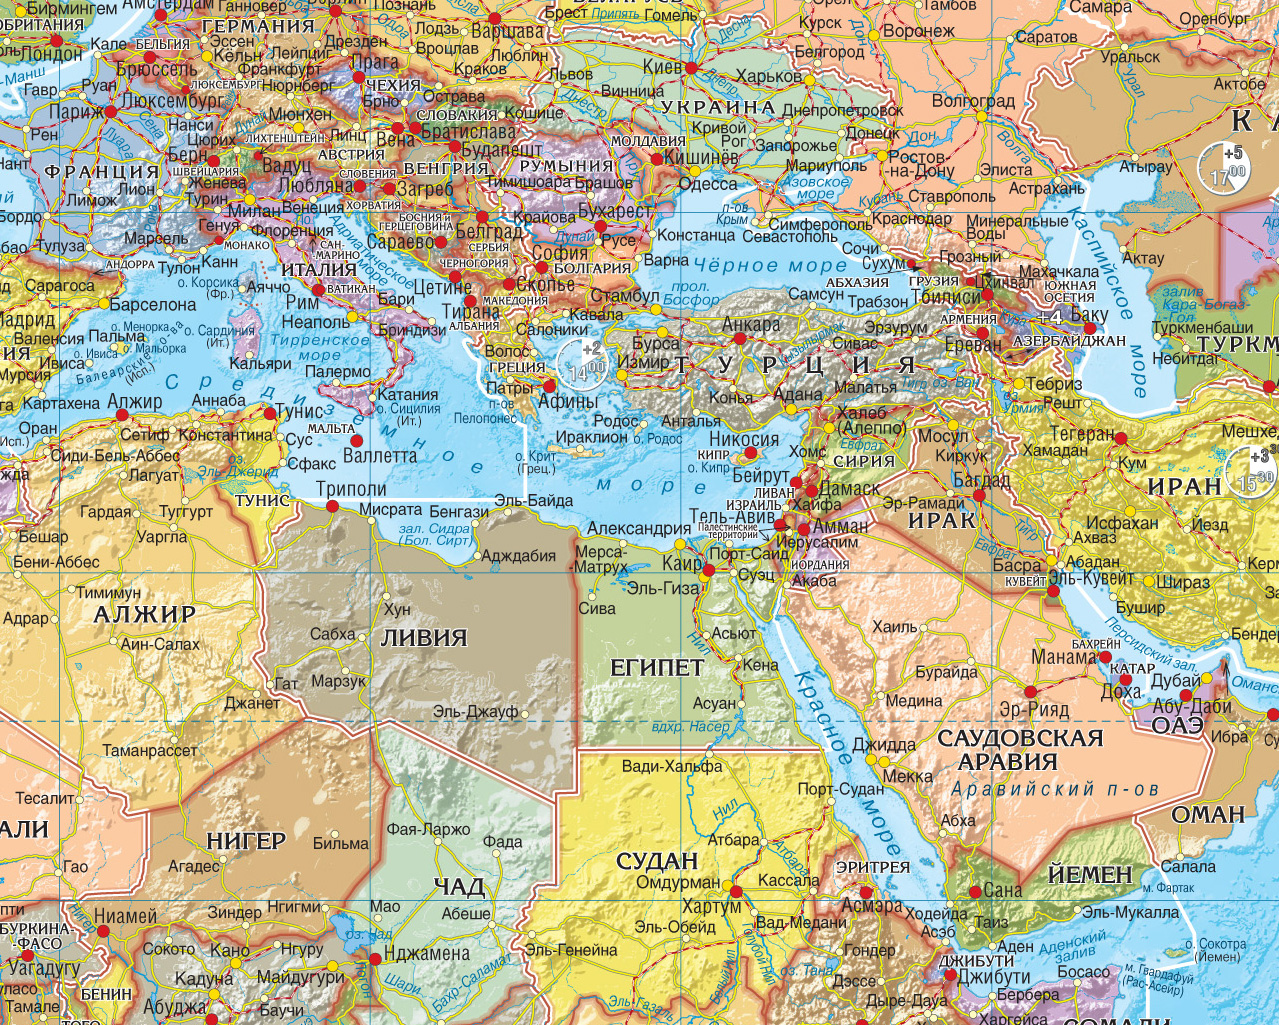 Складная карта мира (политическая и спутниковая)